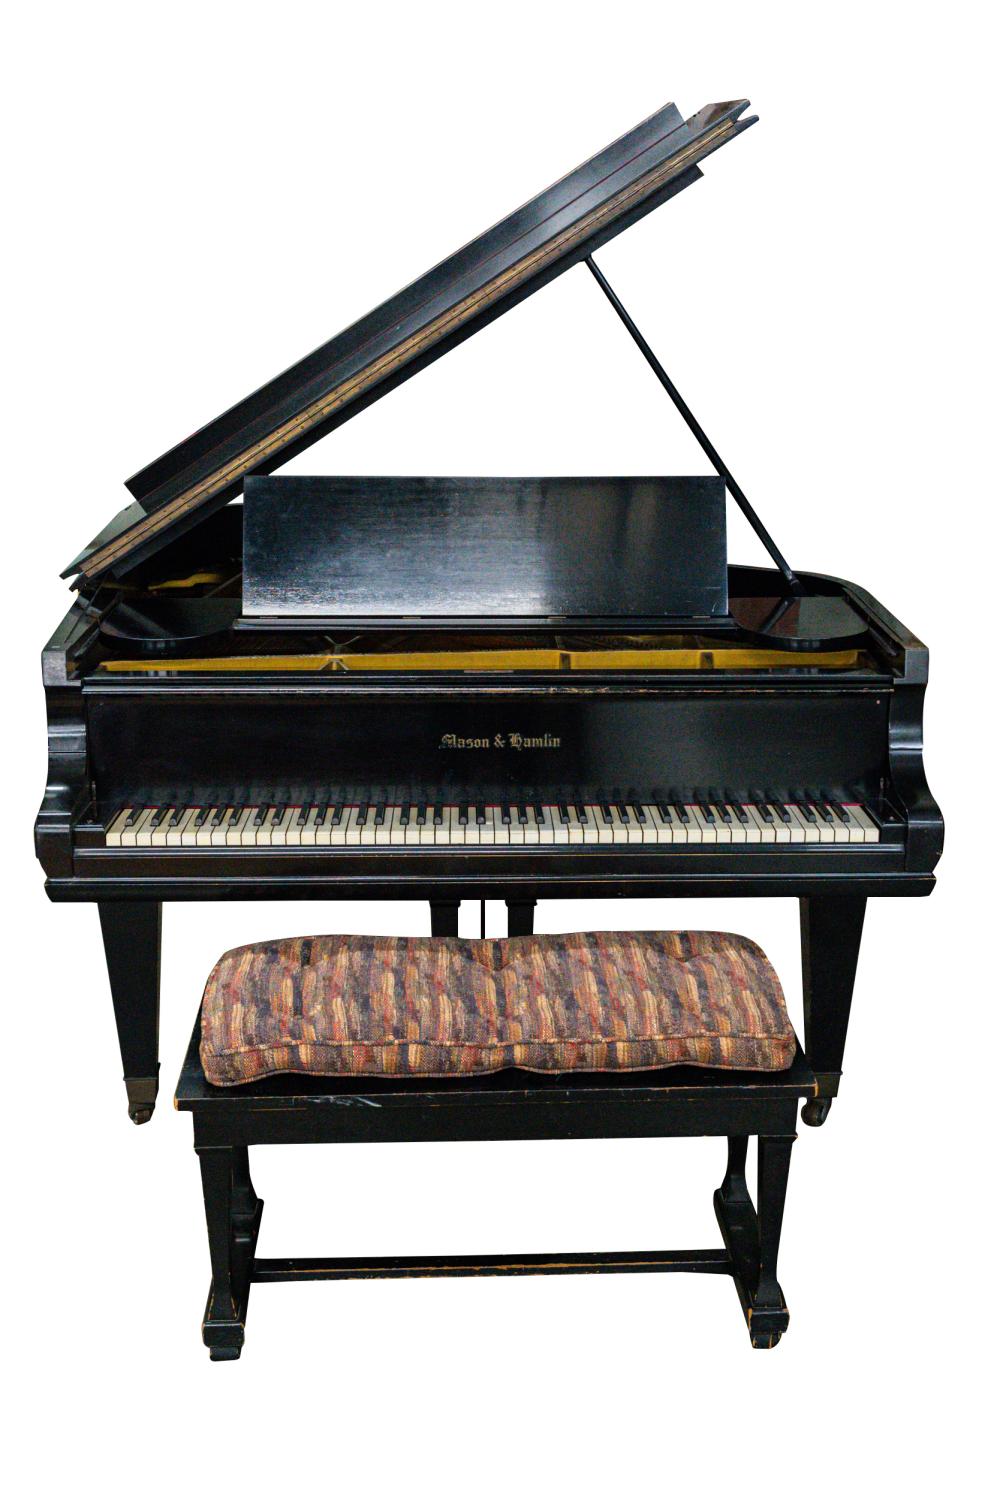 MASON HAMLIN EBONIZED GRAND PIANOserial 332586